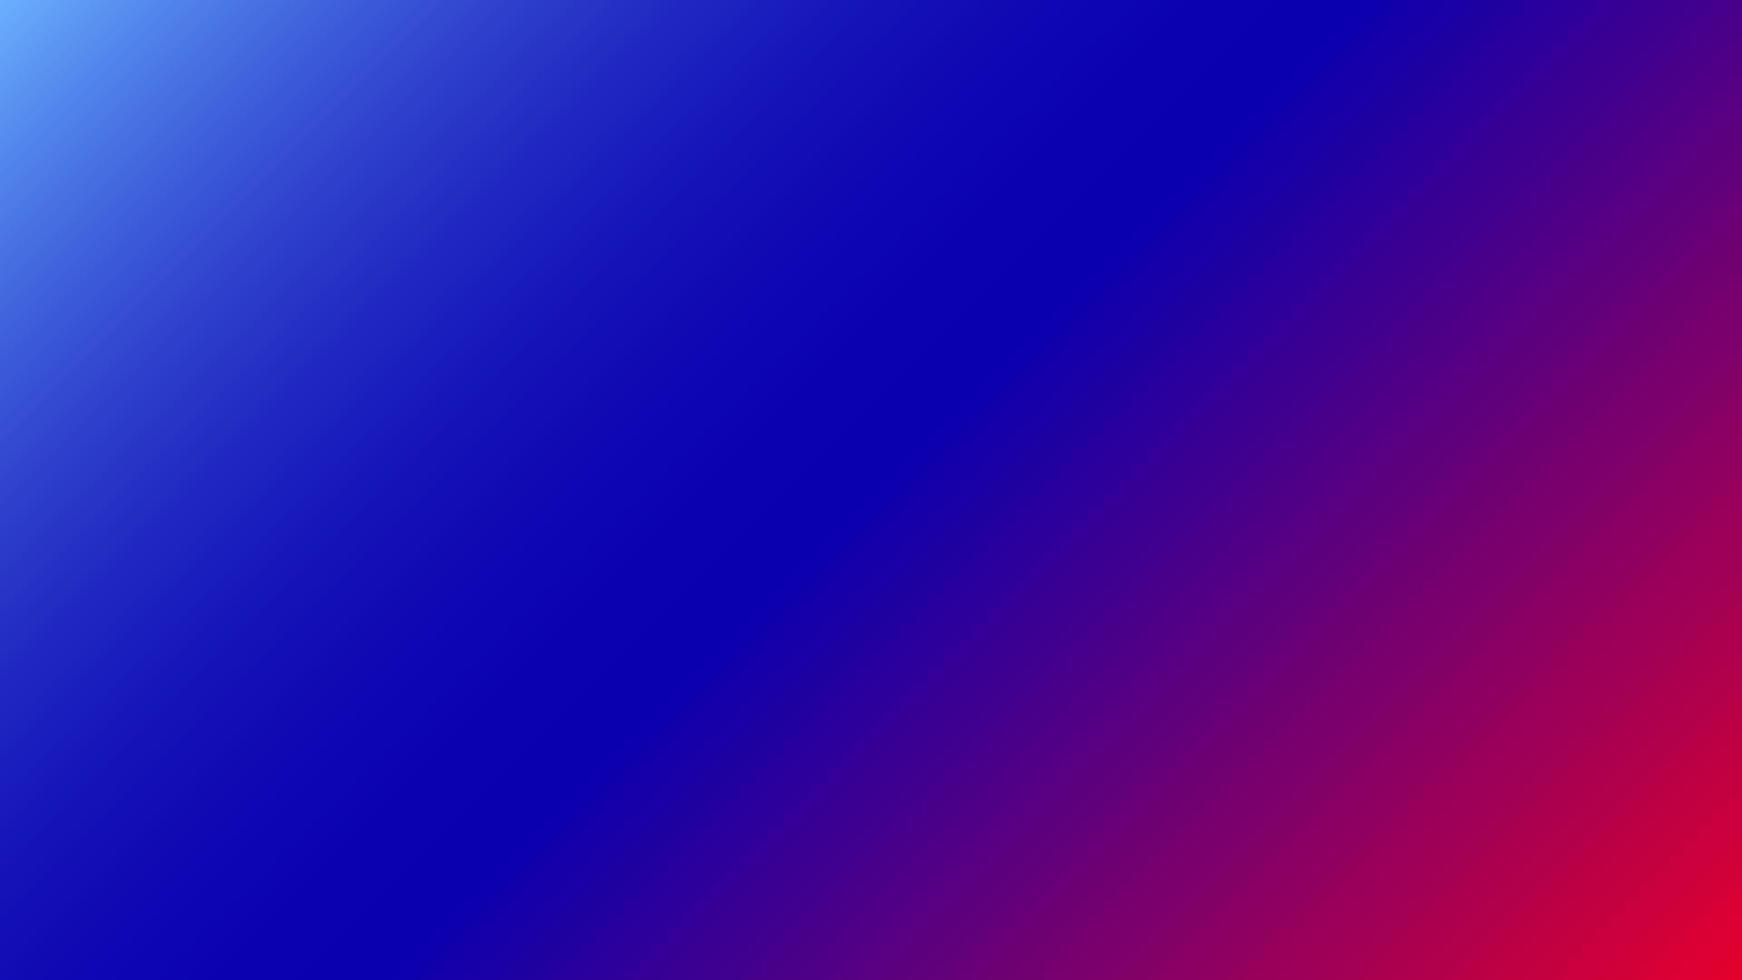 fondo degradado abstracto púrpura, azul, rojo perfecto para diseño, papel tapiz, promoción, presentación, sitio web, banner, etc. fondo de ilustración vector